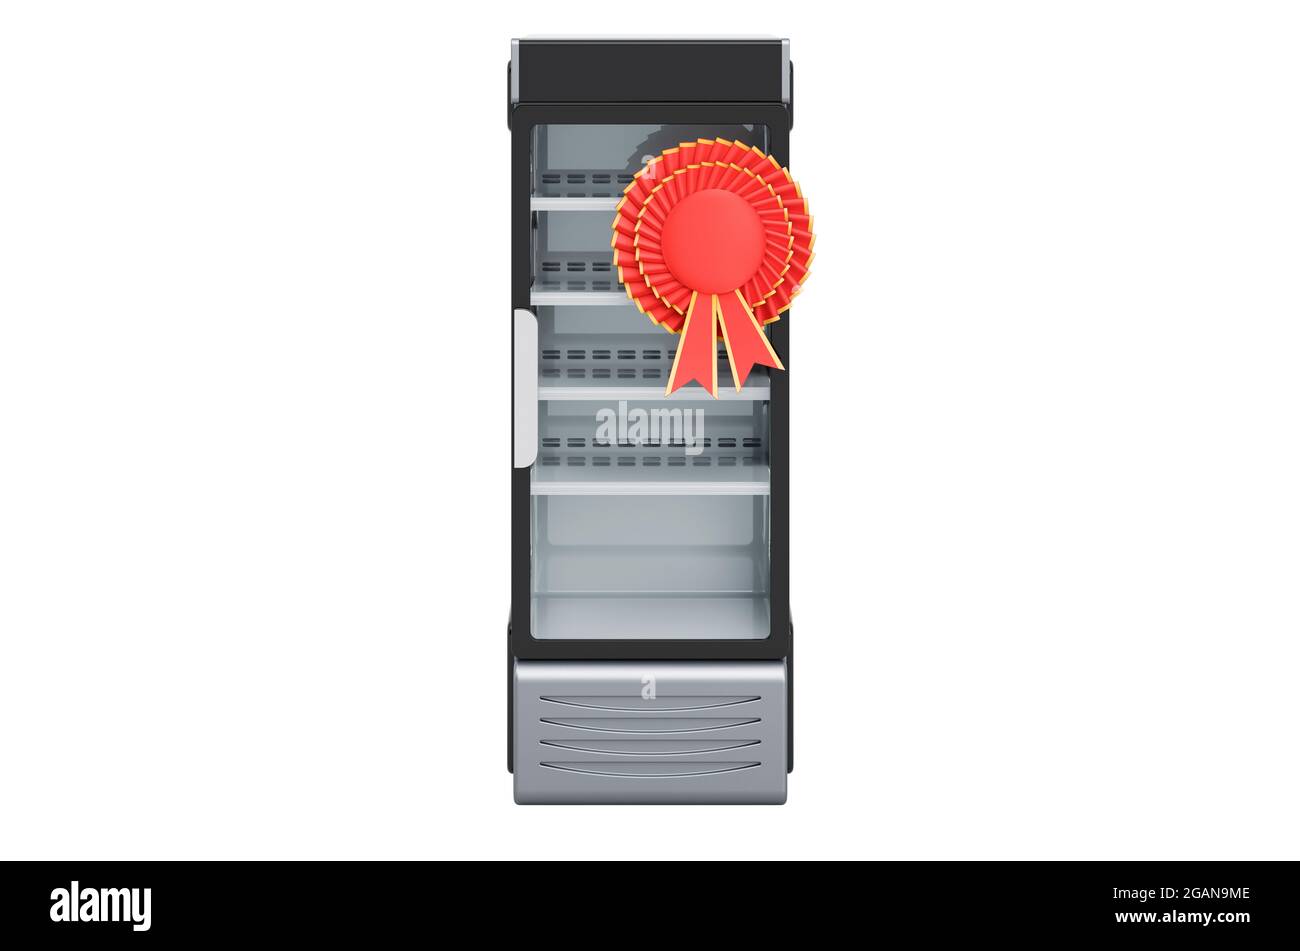 Réfrigérateur à porte vitrée pivotante avec badge BEST Choice, rendu 3D isolé sur fond blanc Banque D'Images